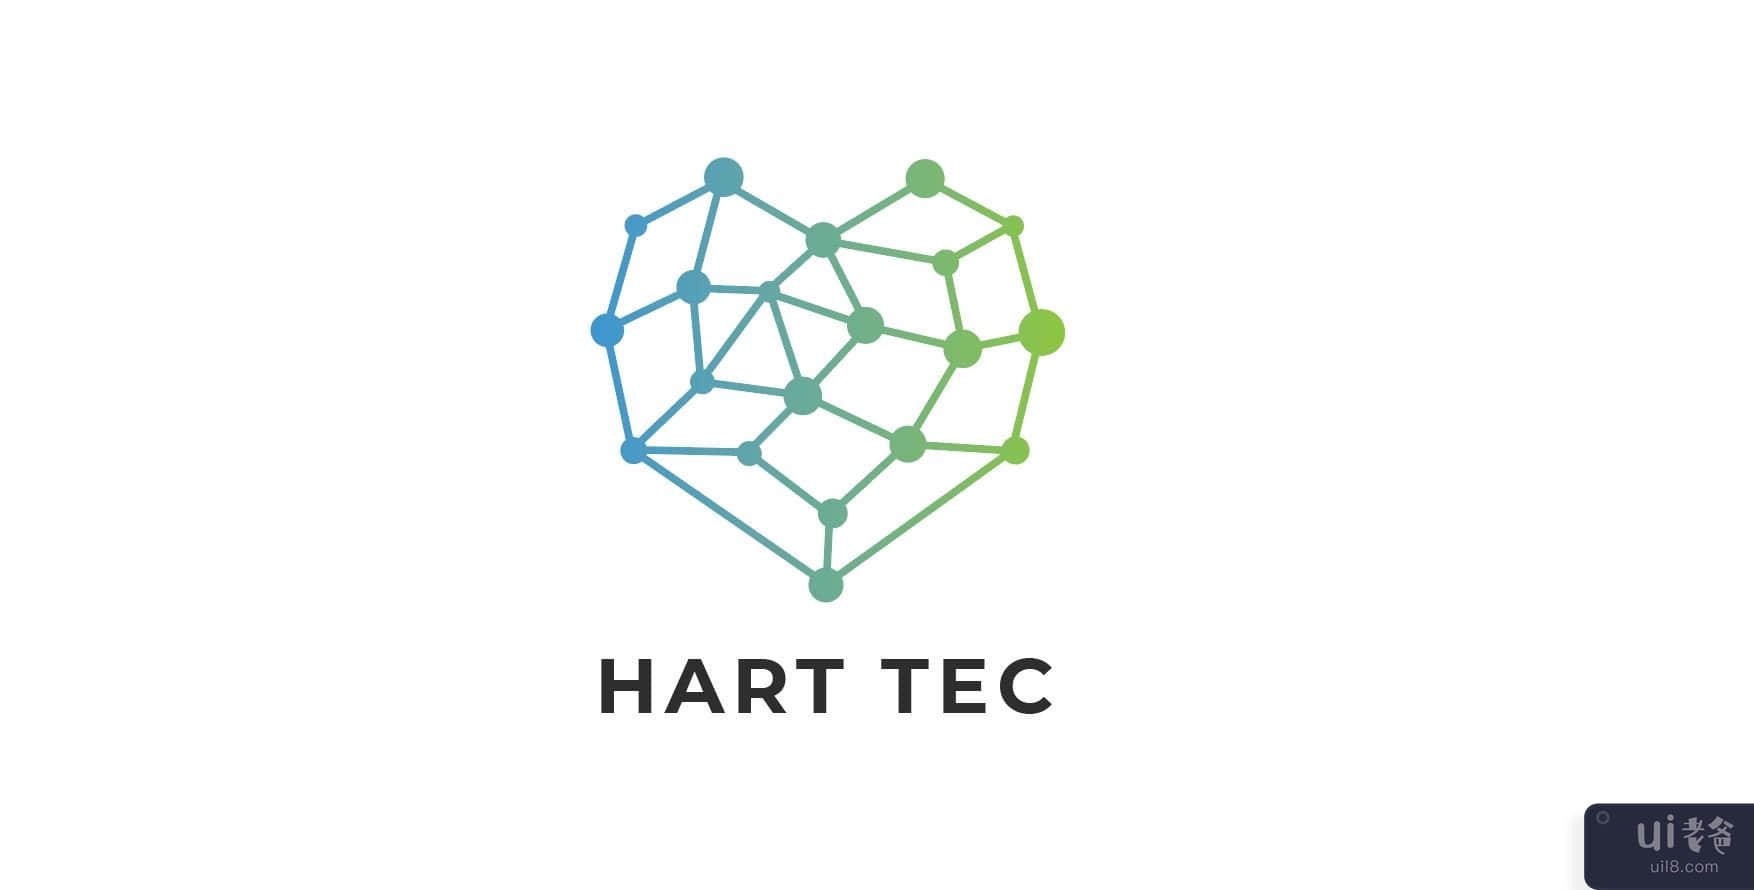 心脏技术标志(Heart Tec Logo)插图5